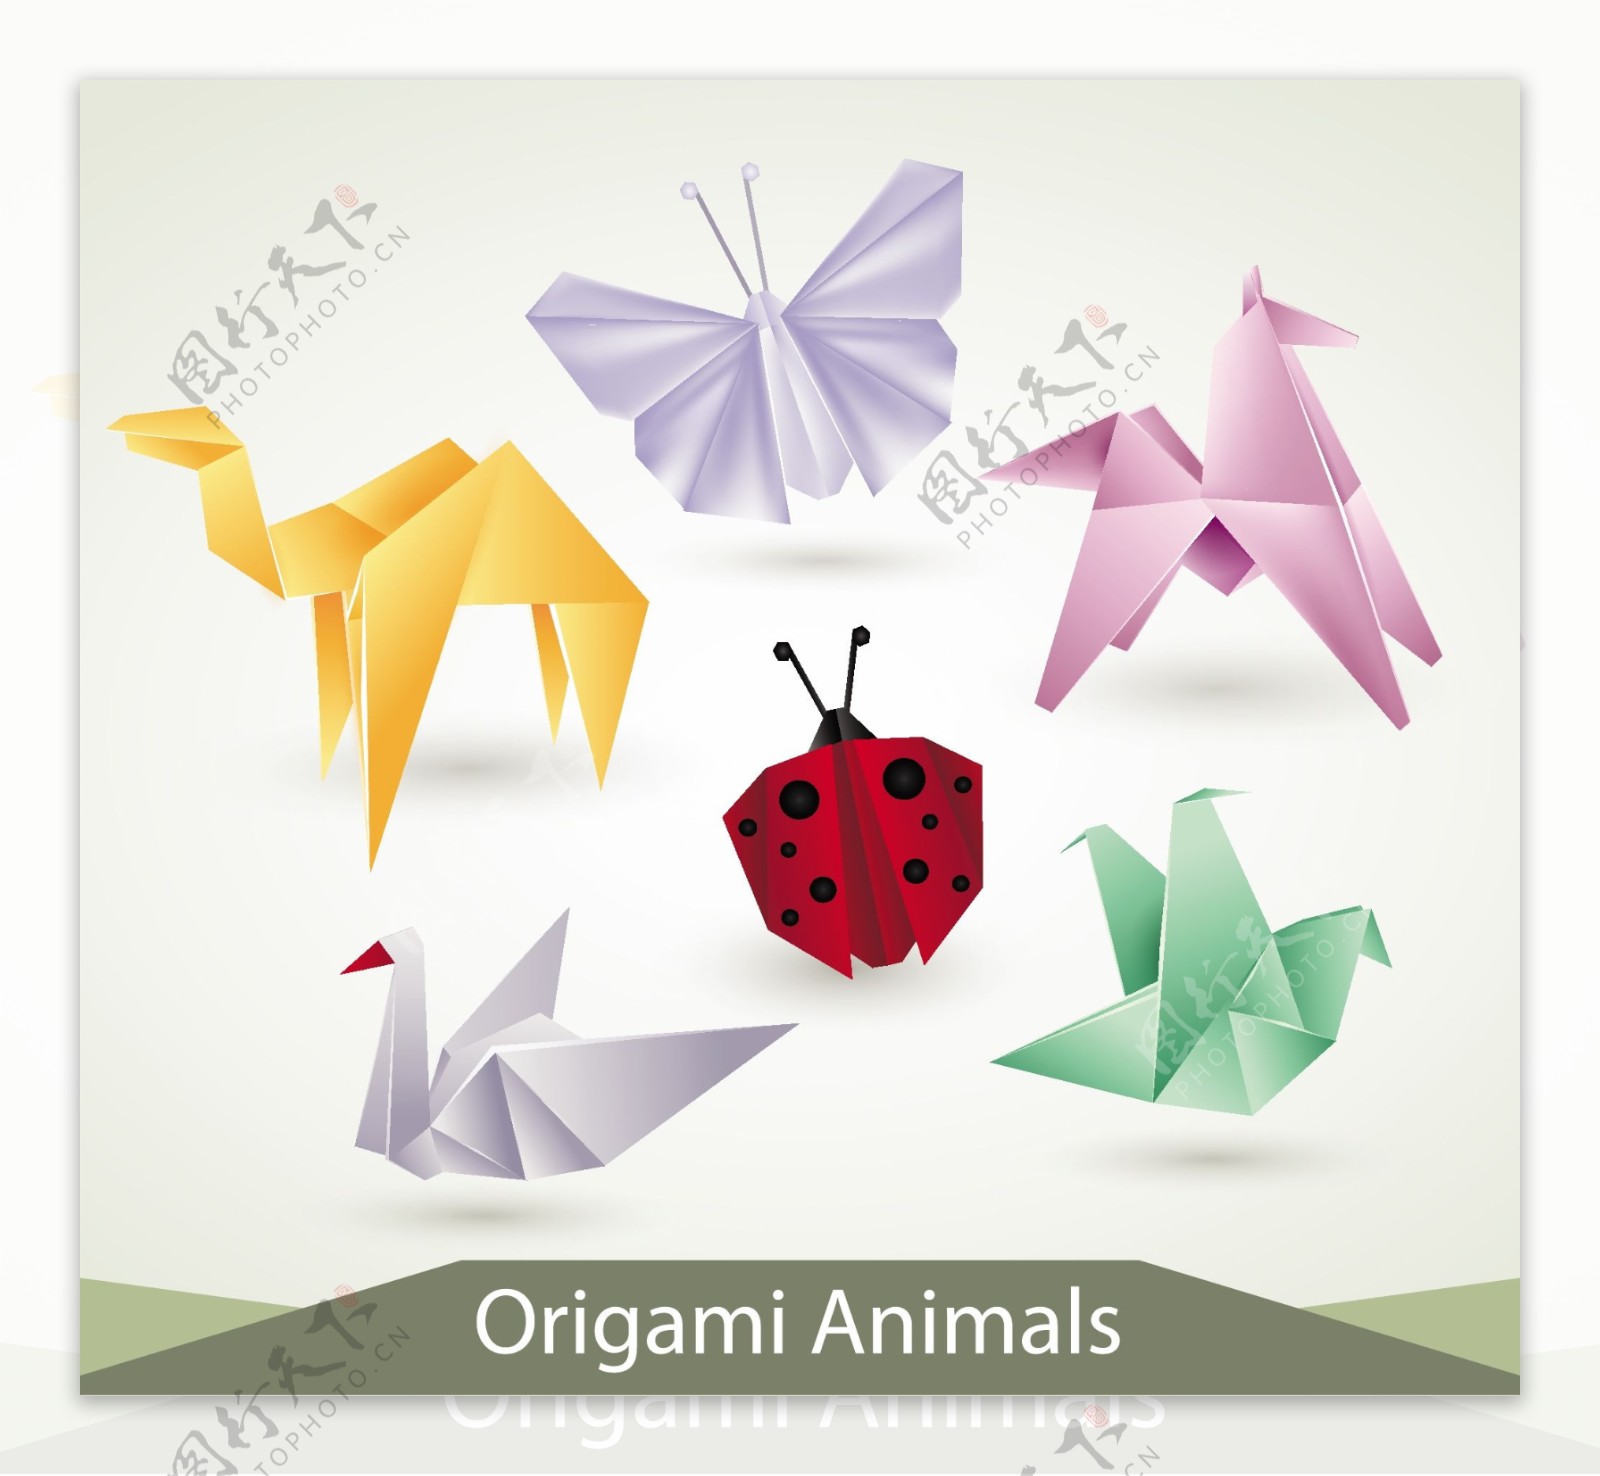 各种折纸动物设计矢量素材04